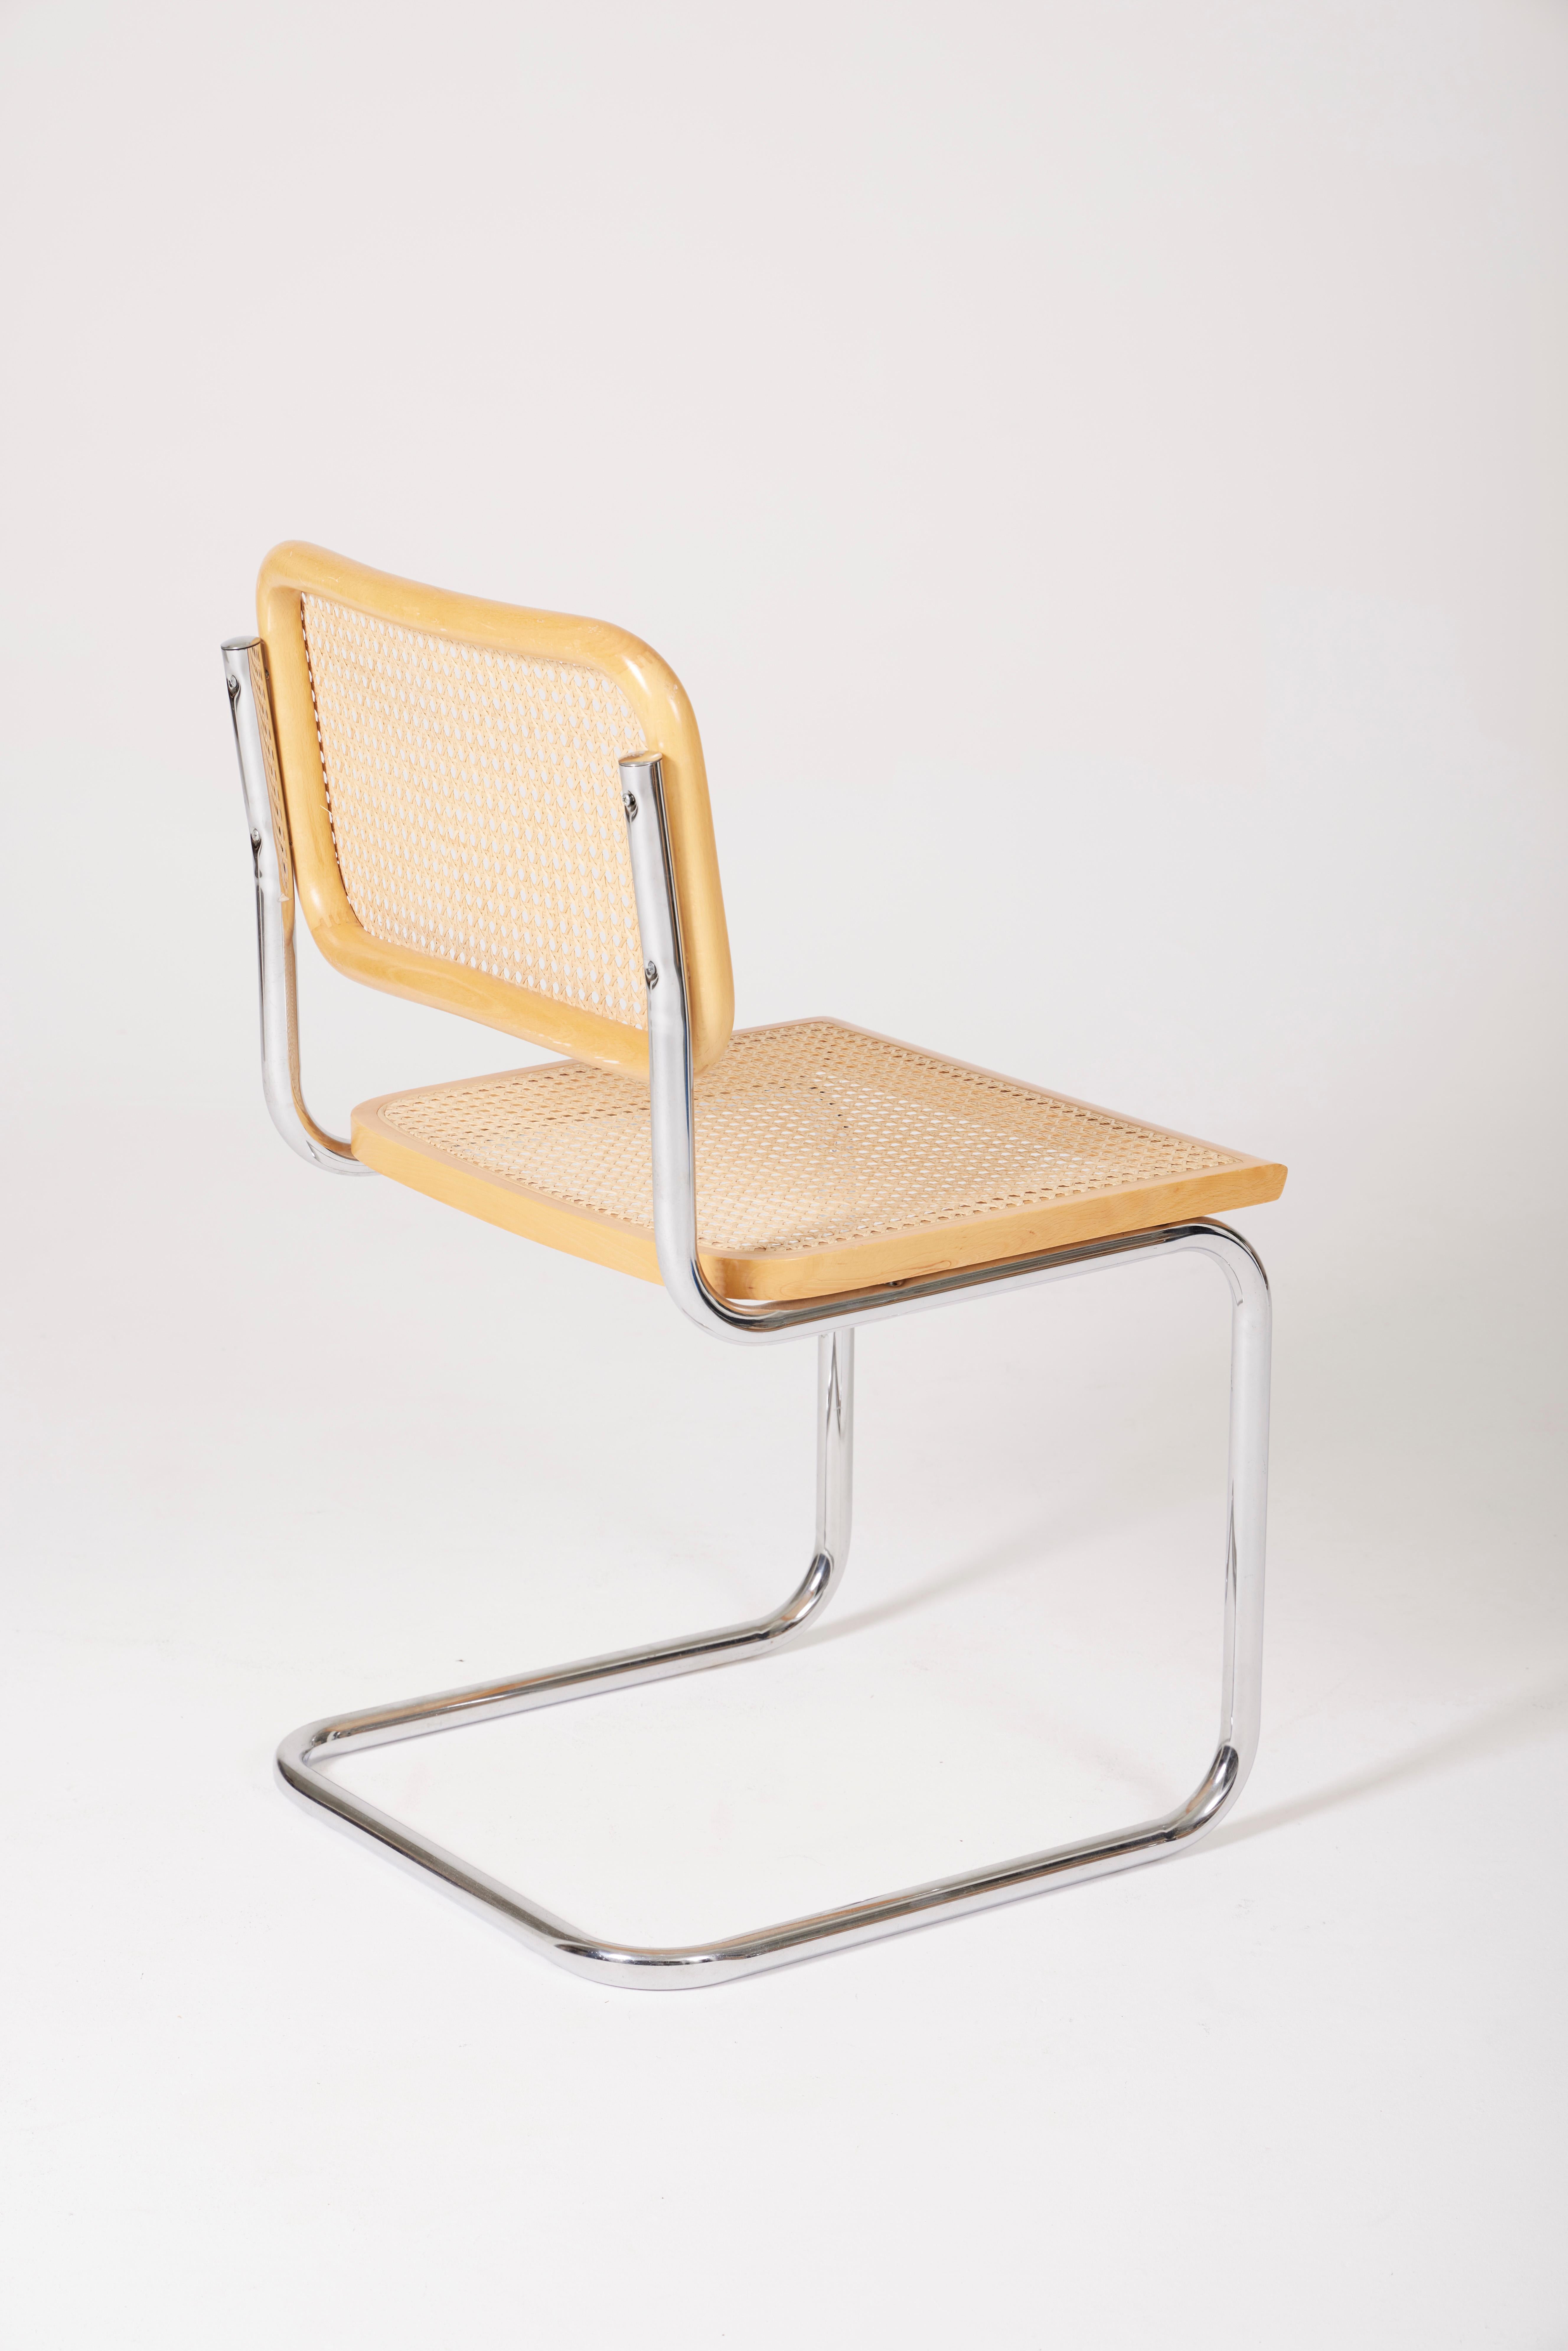 Steel Chair by Marcel Breuer